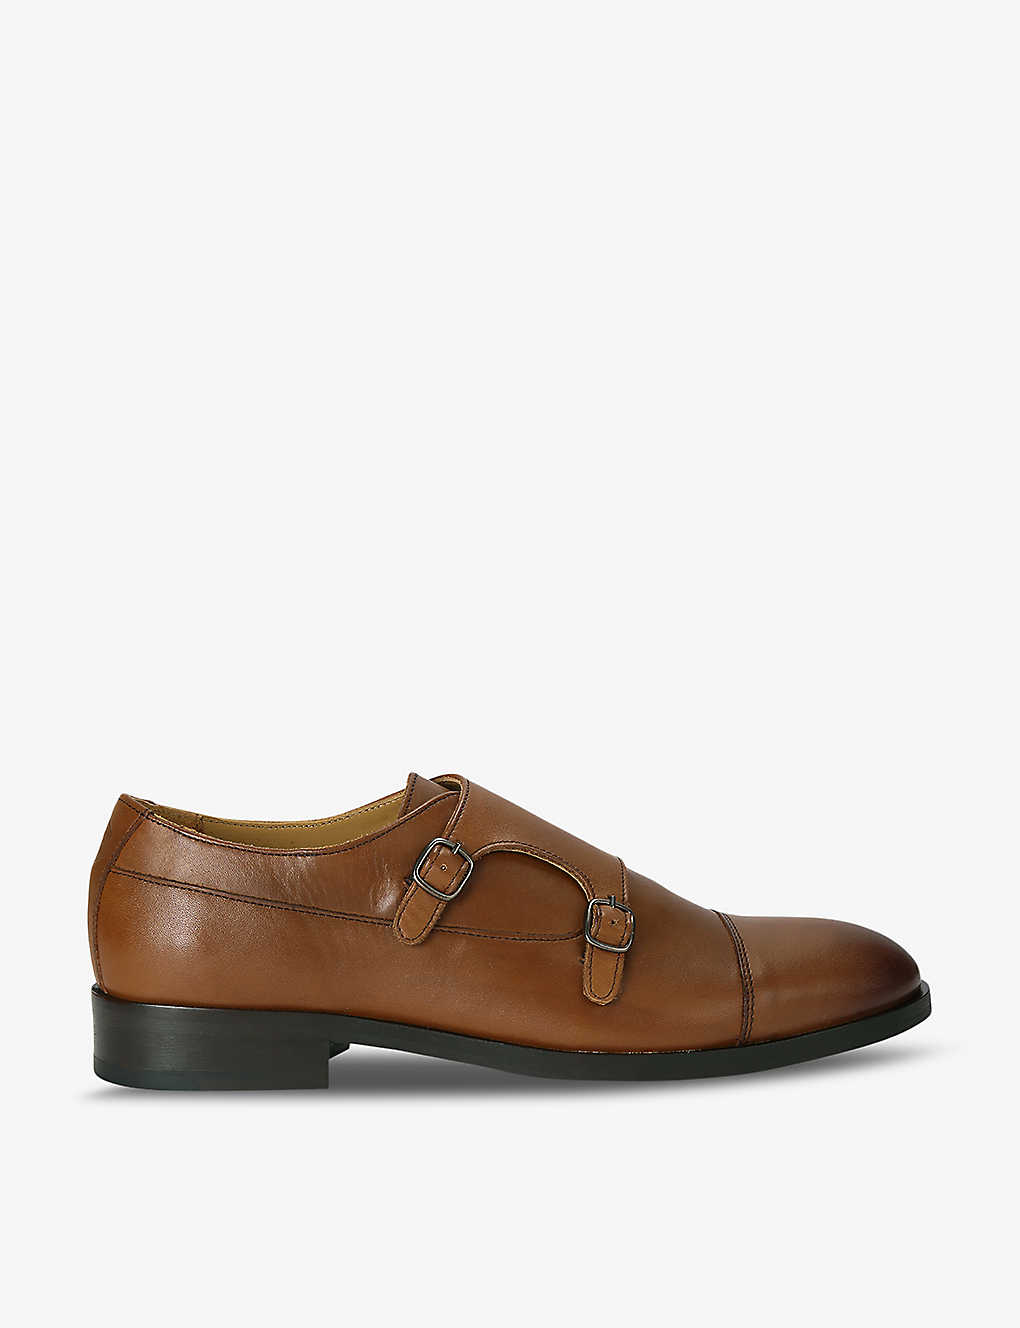 Shop Kurt Geiger London Men's Tan Hunter Leather Monk Shoes